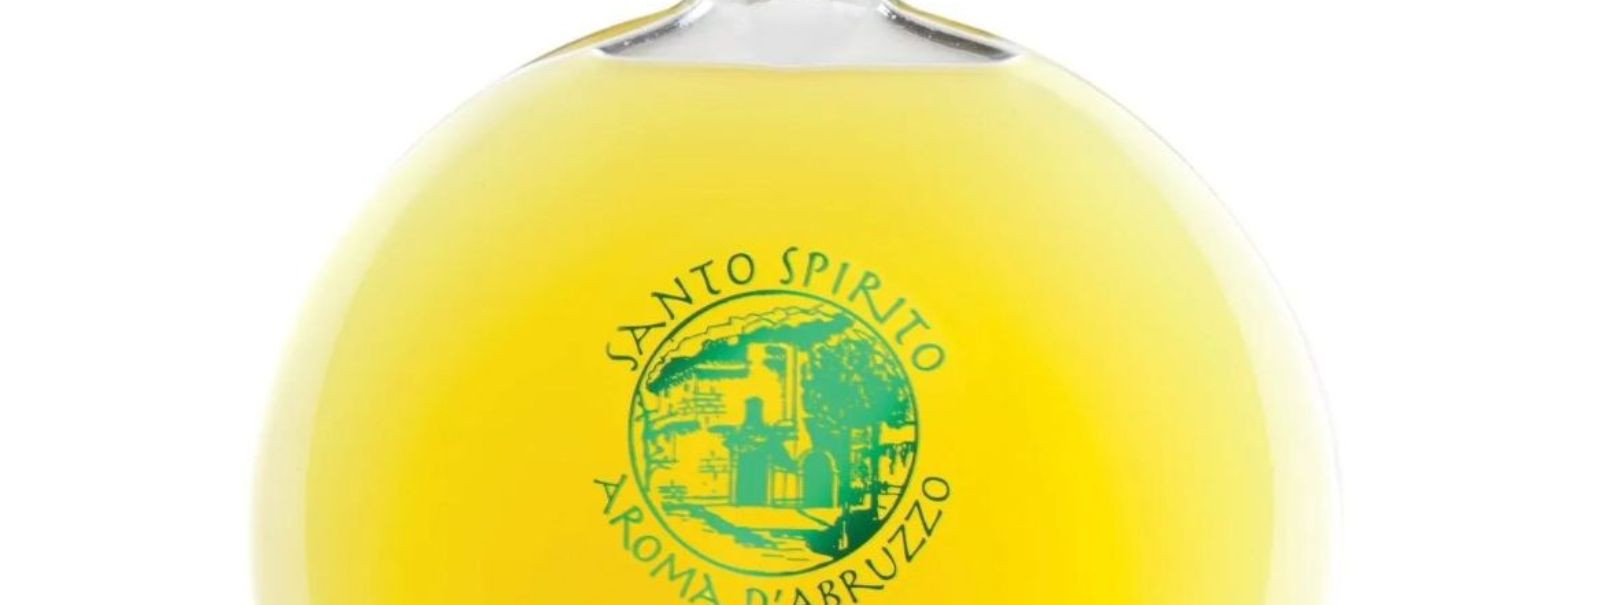 Lemoncello on Itaalia üks armastatumaid jooke, mida tuntakse üle maailma oma unikaalse maitse ja aroomi poolest. See karge ja värskendav jook on valmistatud Sor